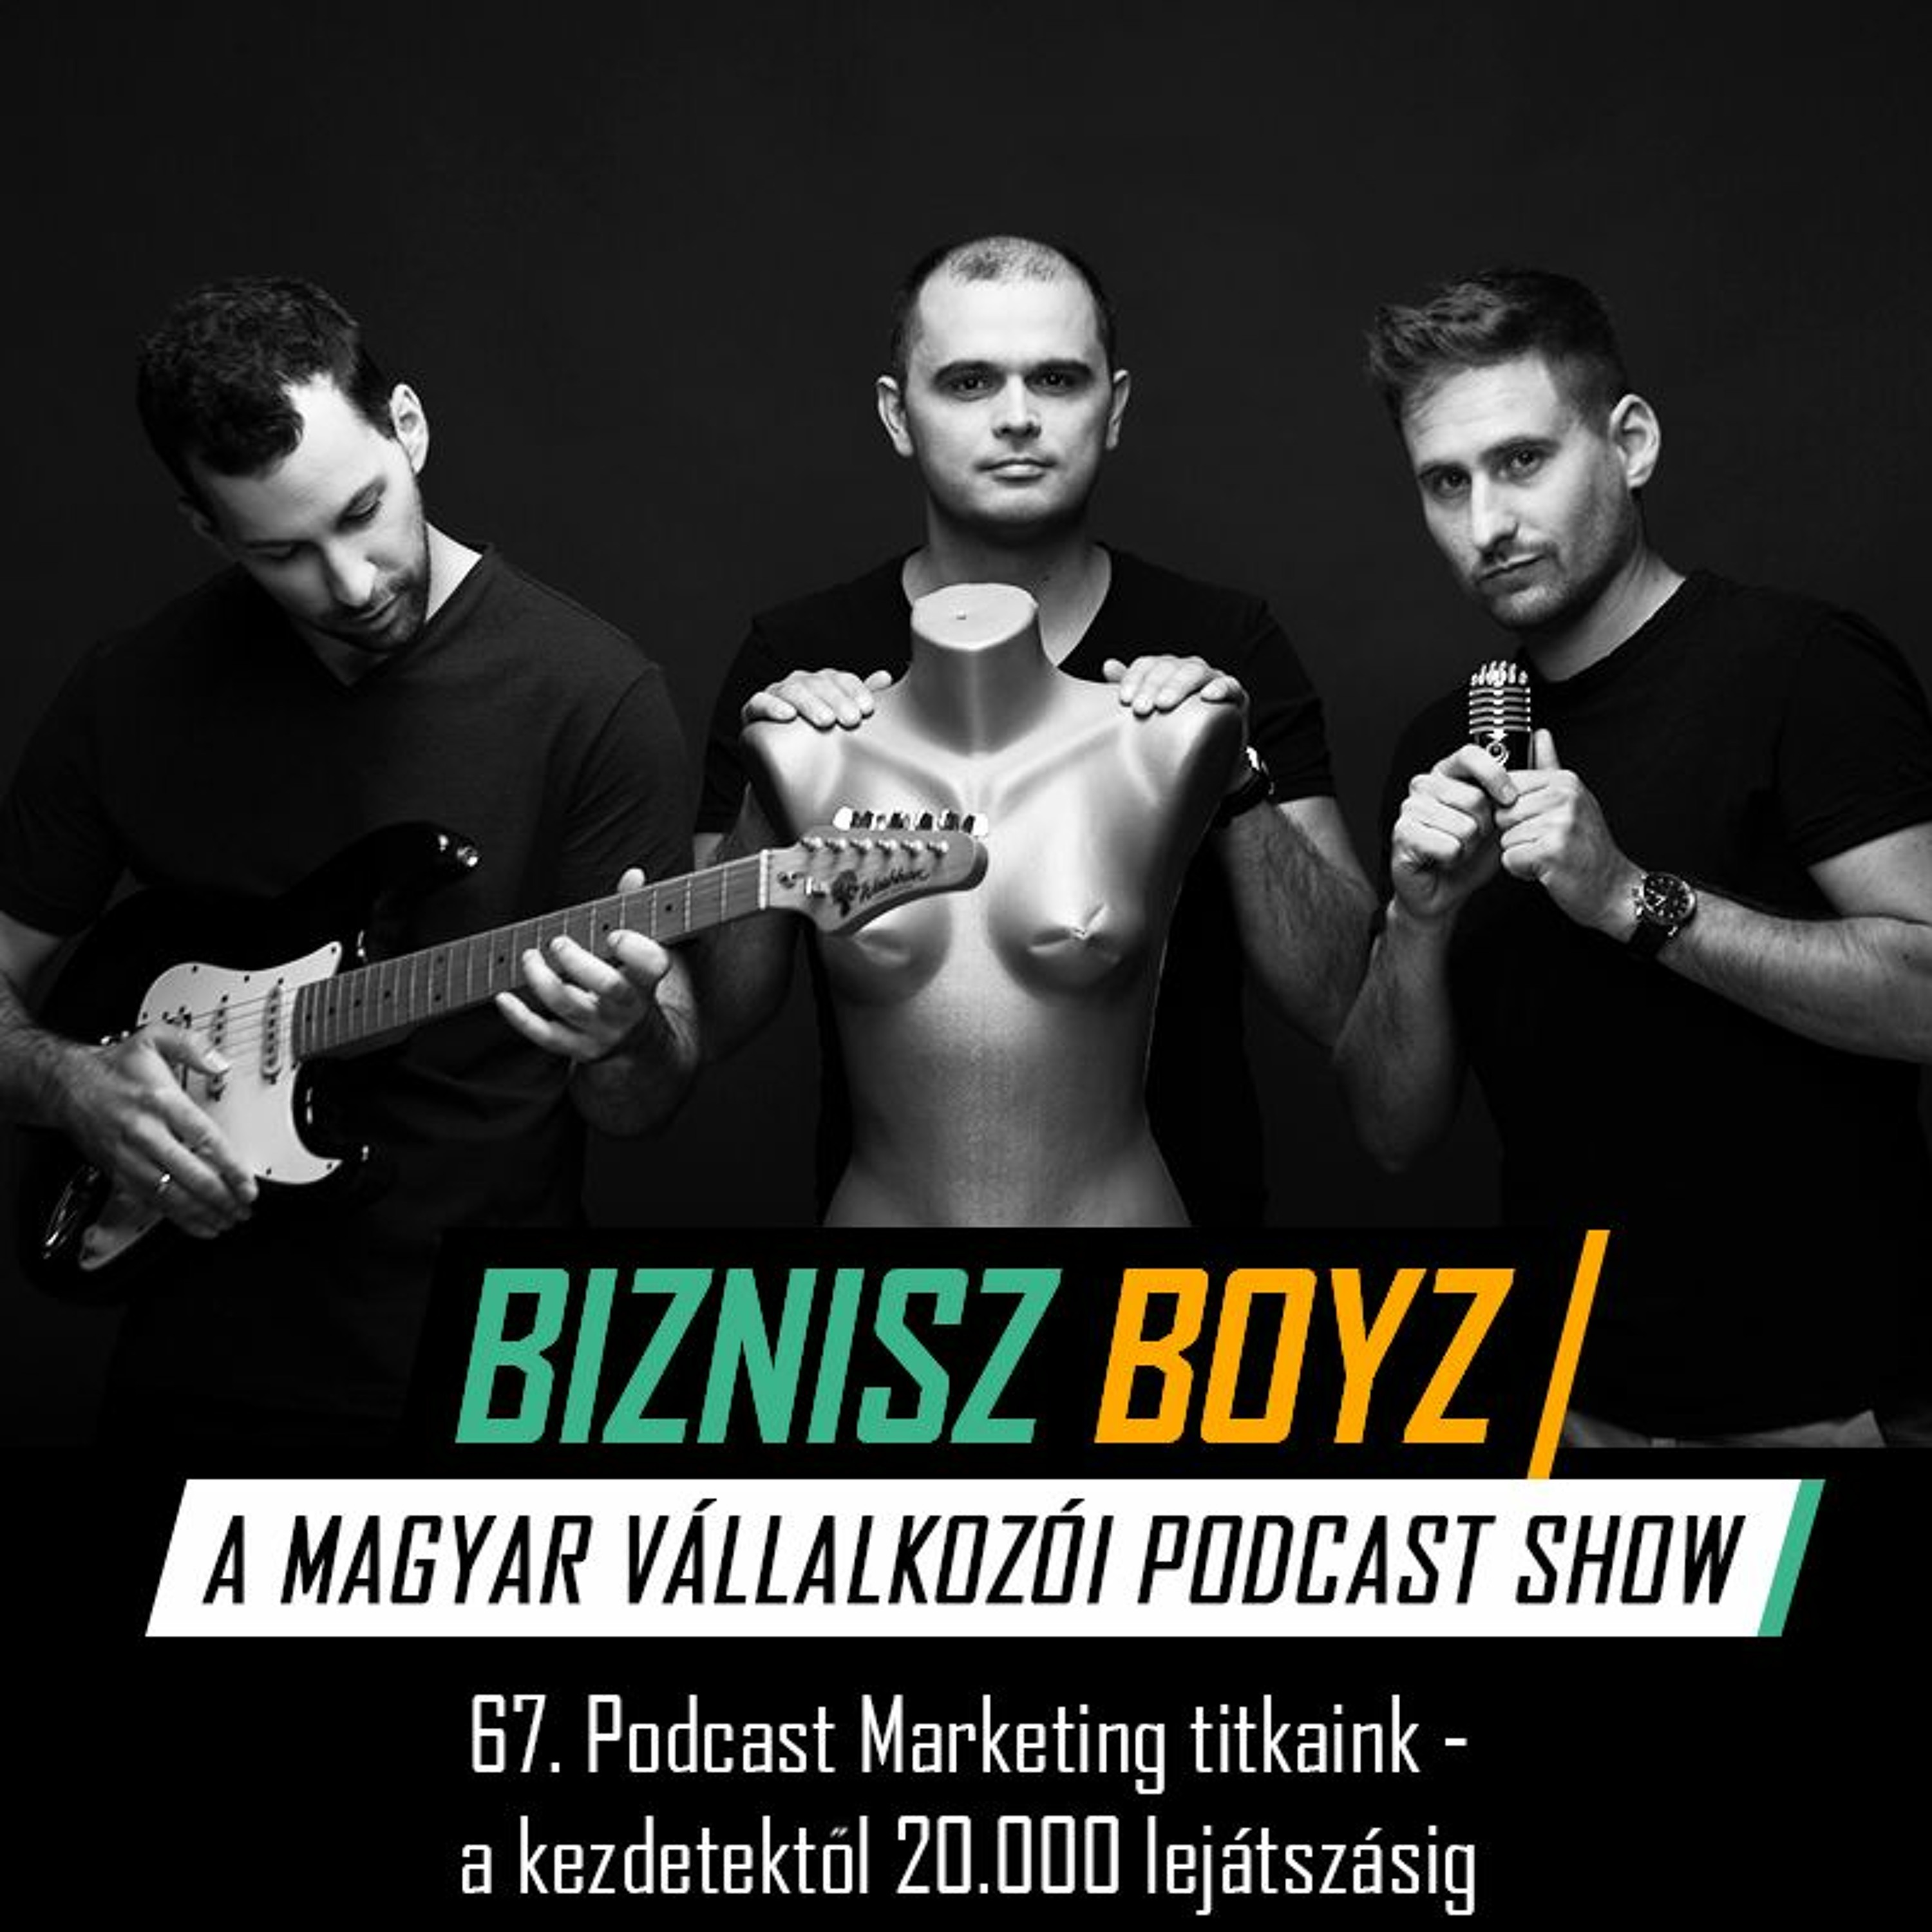 67. Podcast Marketing titkaink - A kezdetektől 20.000 lejátszásig | Biznisz Boyz Podcast